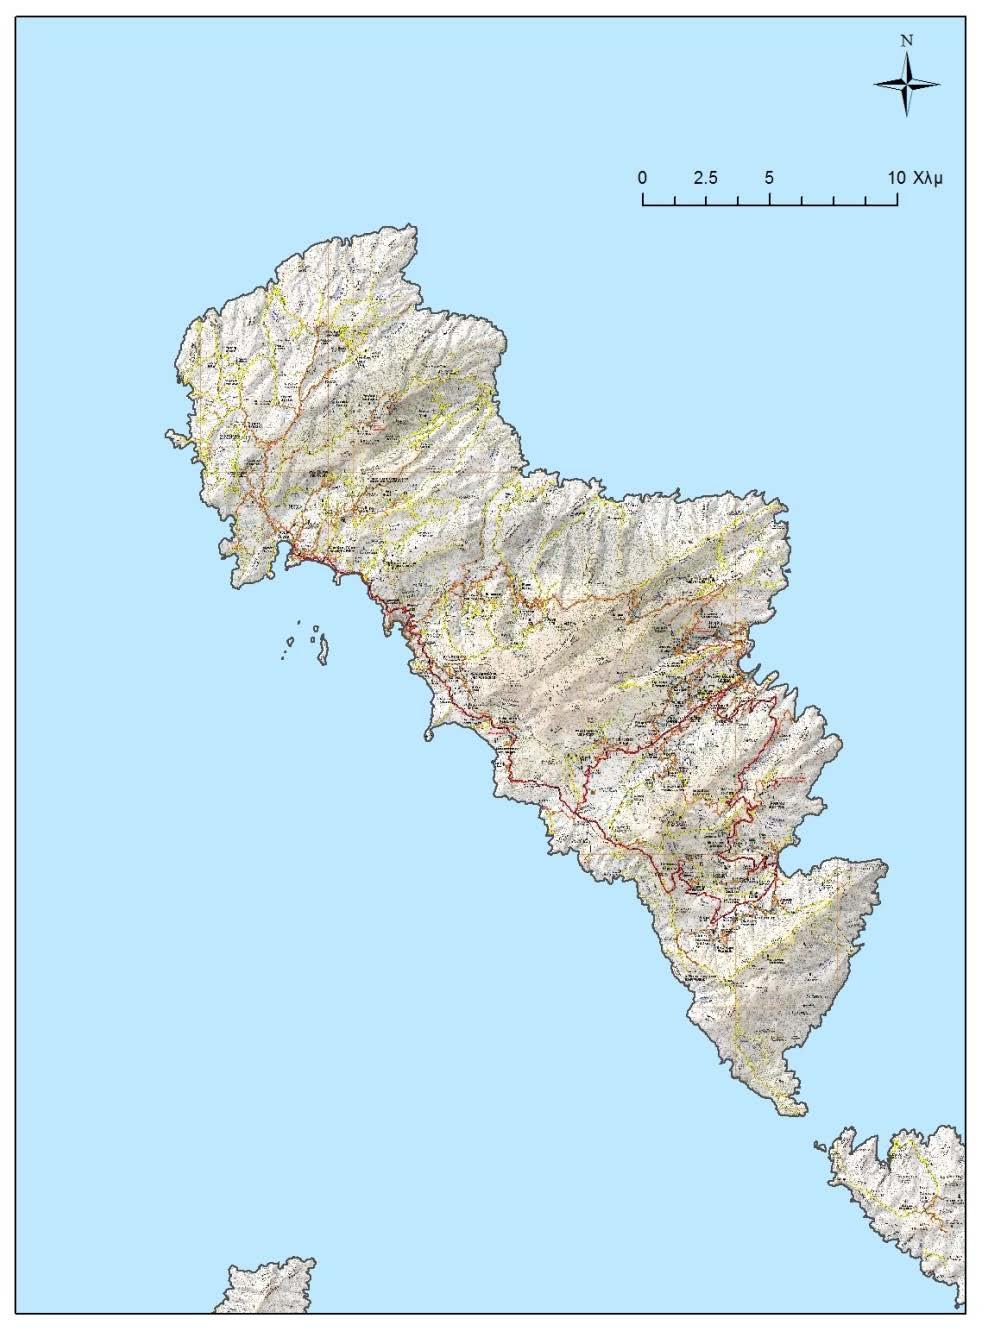 17. Ο χάρτης υποβάθρου της Ανάβασης Παρουσίαση της γεωβάσης χωρικών δεδομένων της Άνδρου Ο χάρτης υποβάθρου της Άνδρου αγοράστηκε από την εκδοτική-χαρτογραφική